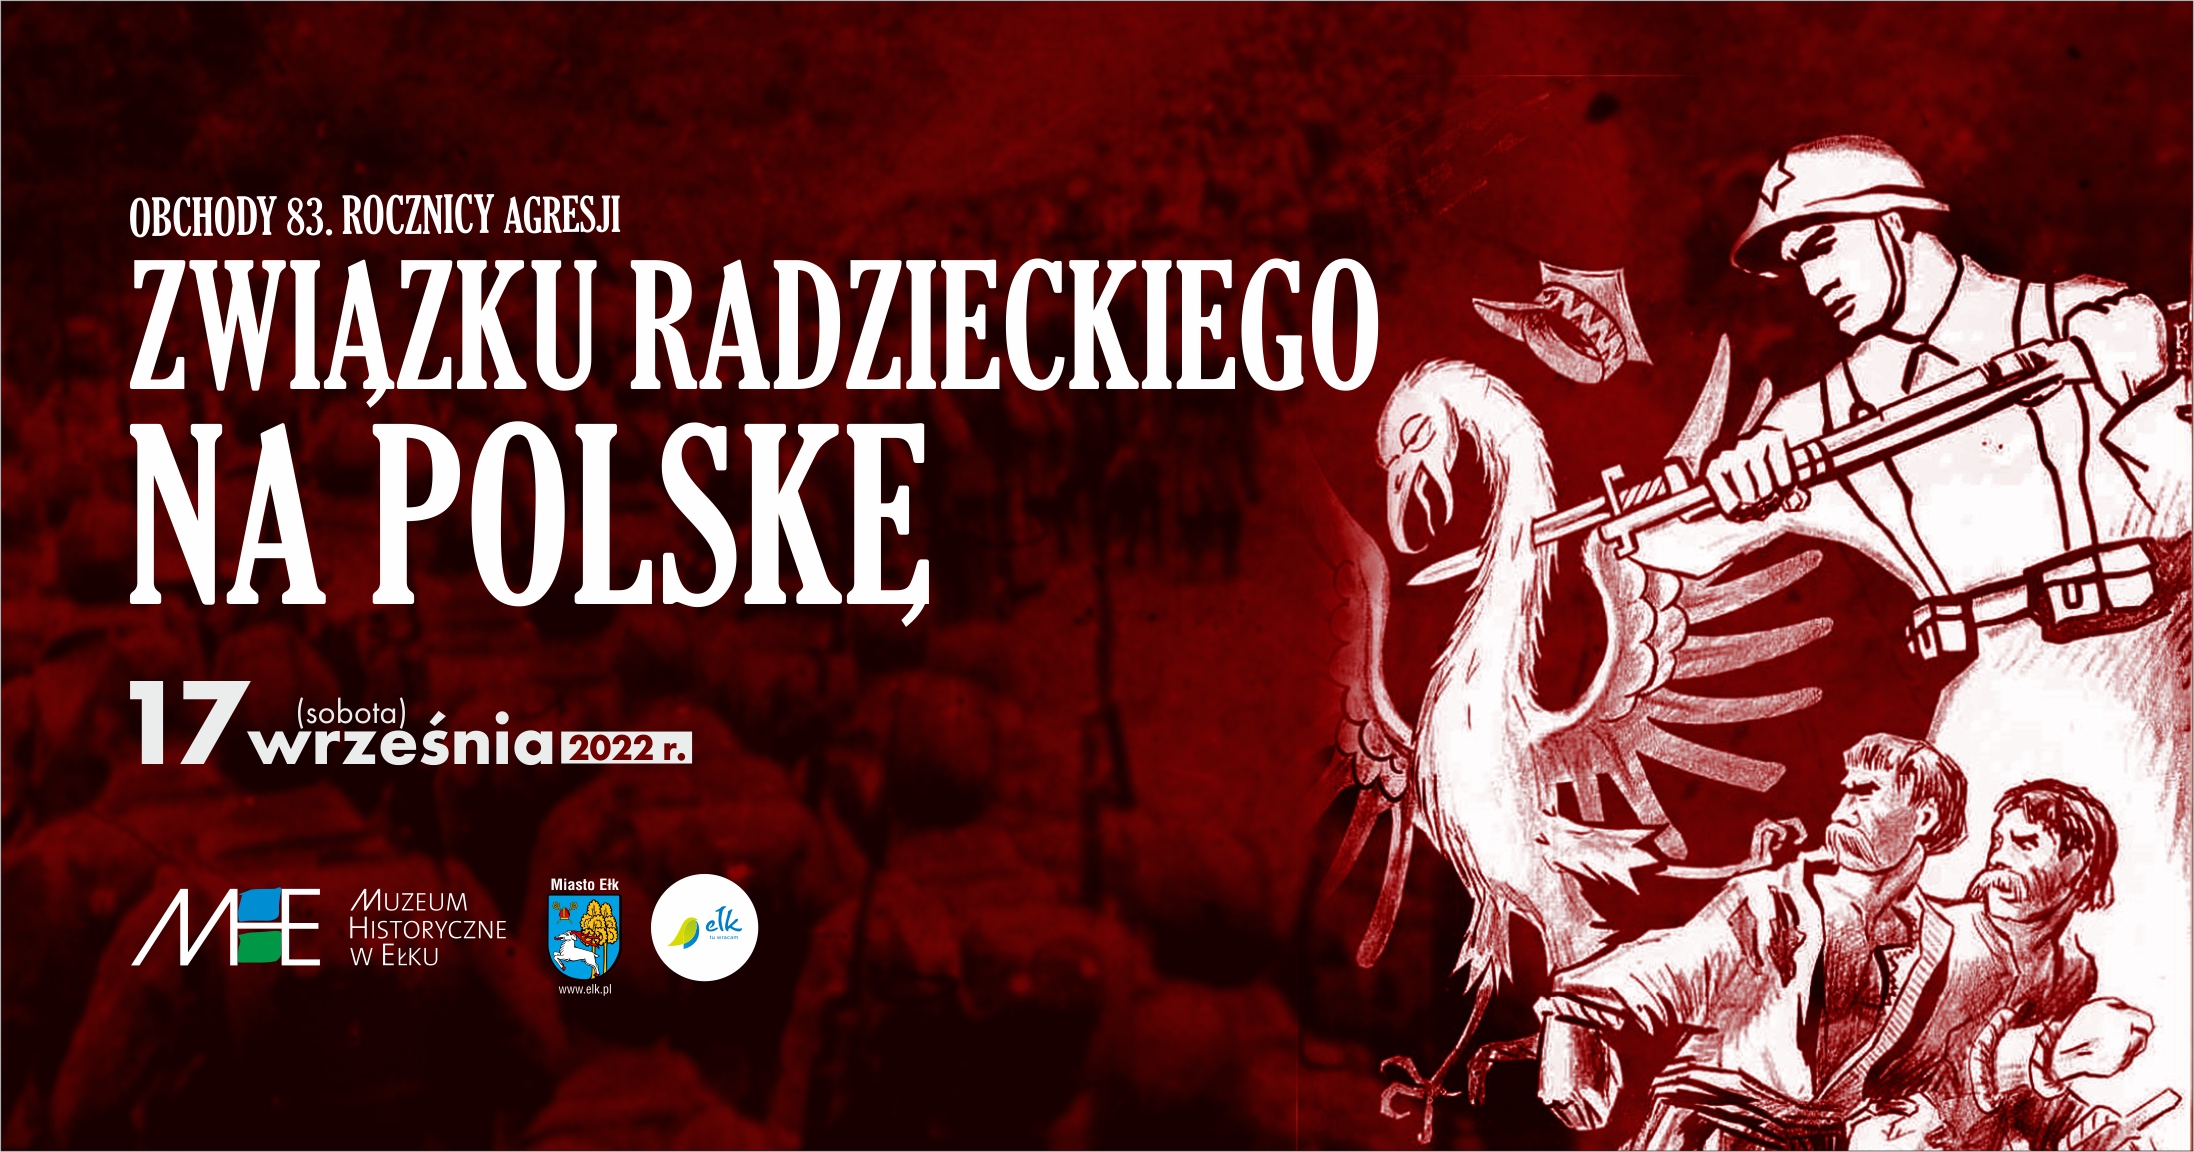 83-я годовщина агрессии СССР против Польши